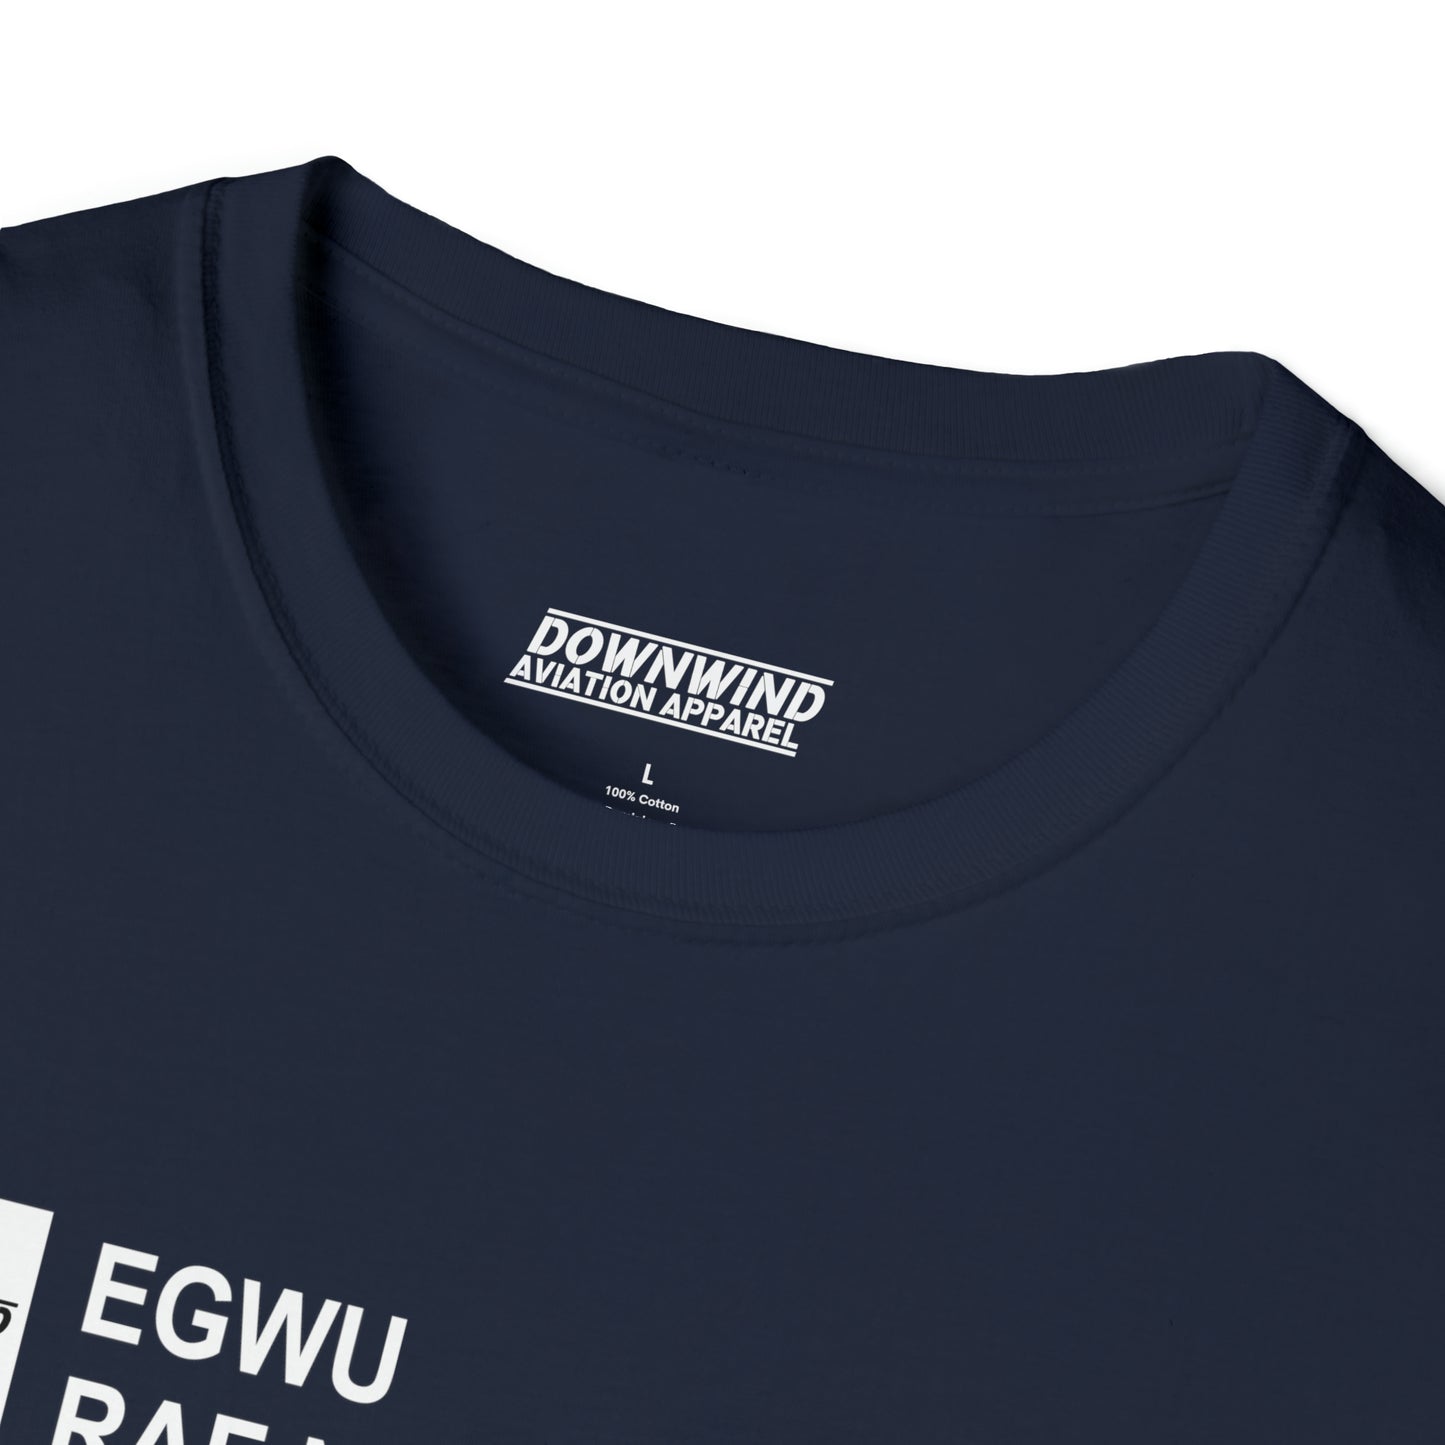 EGWU / RAF Northolt T-Shirt